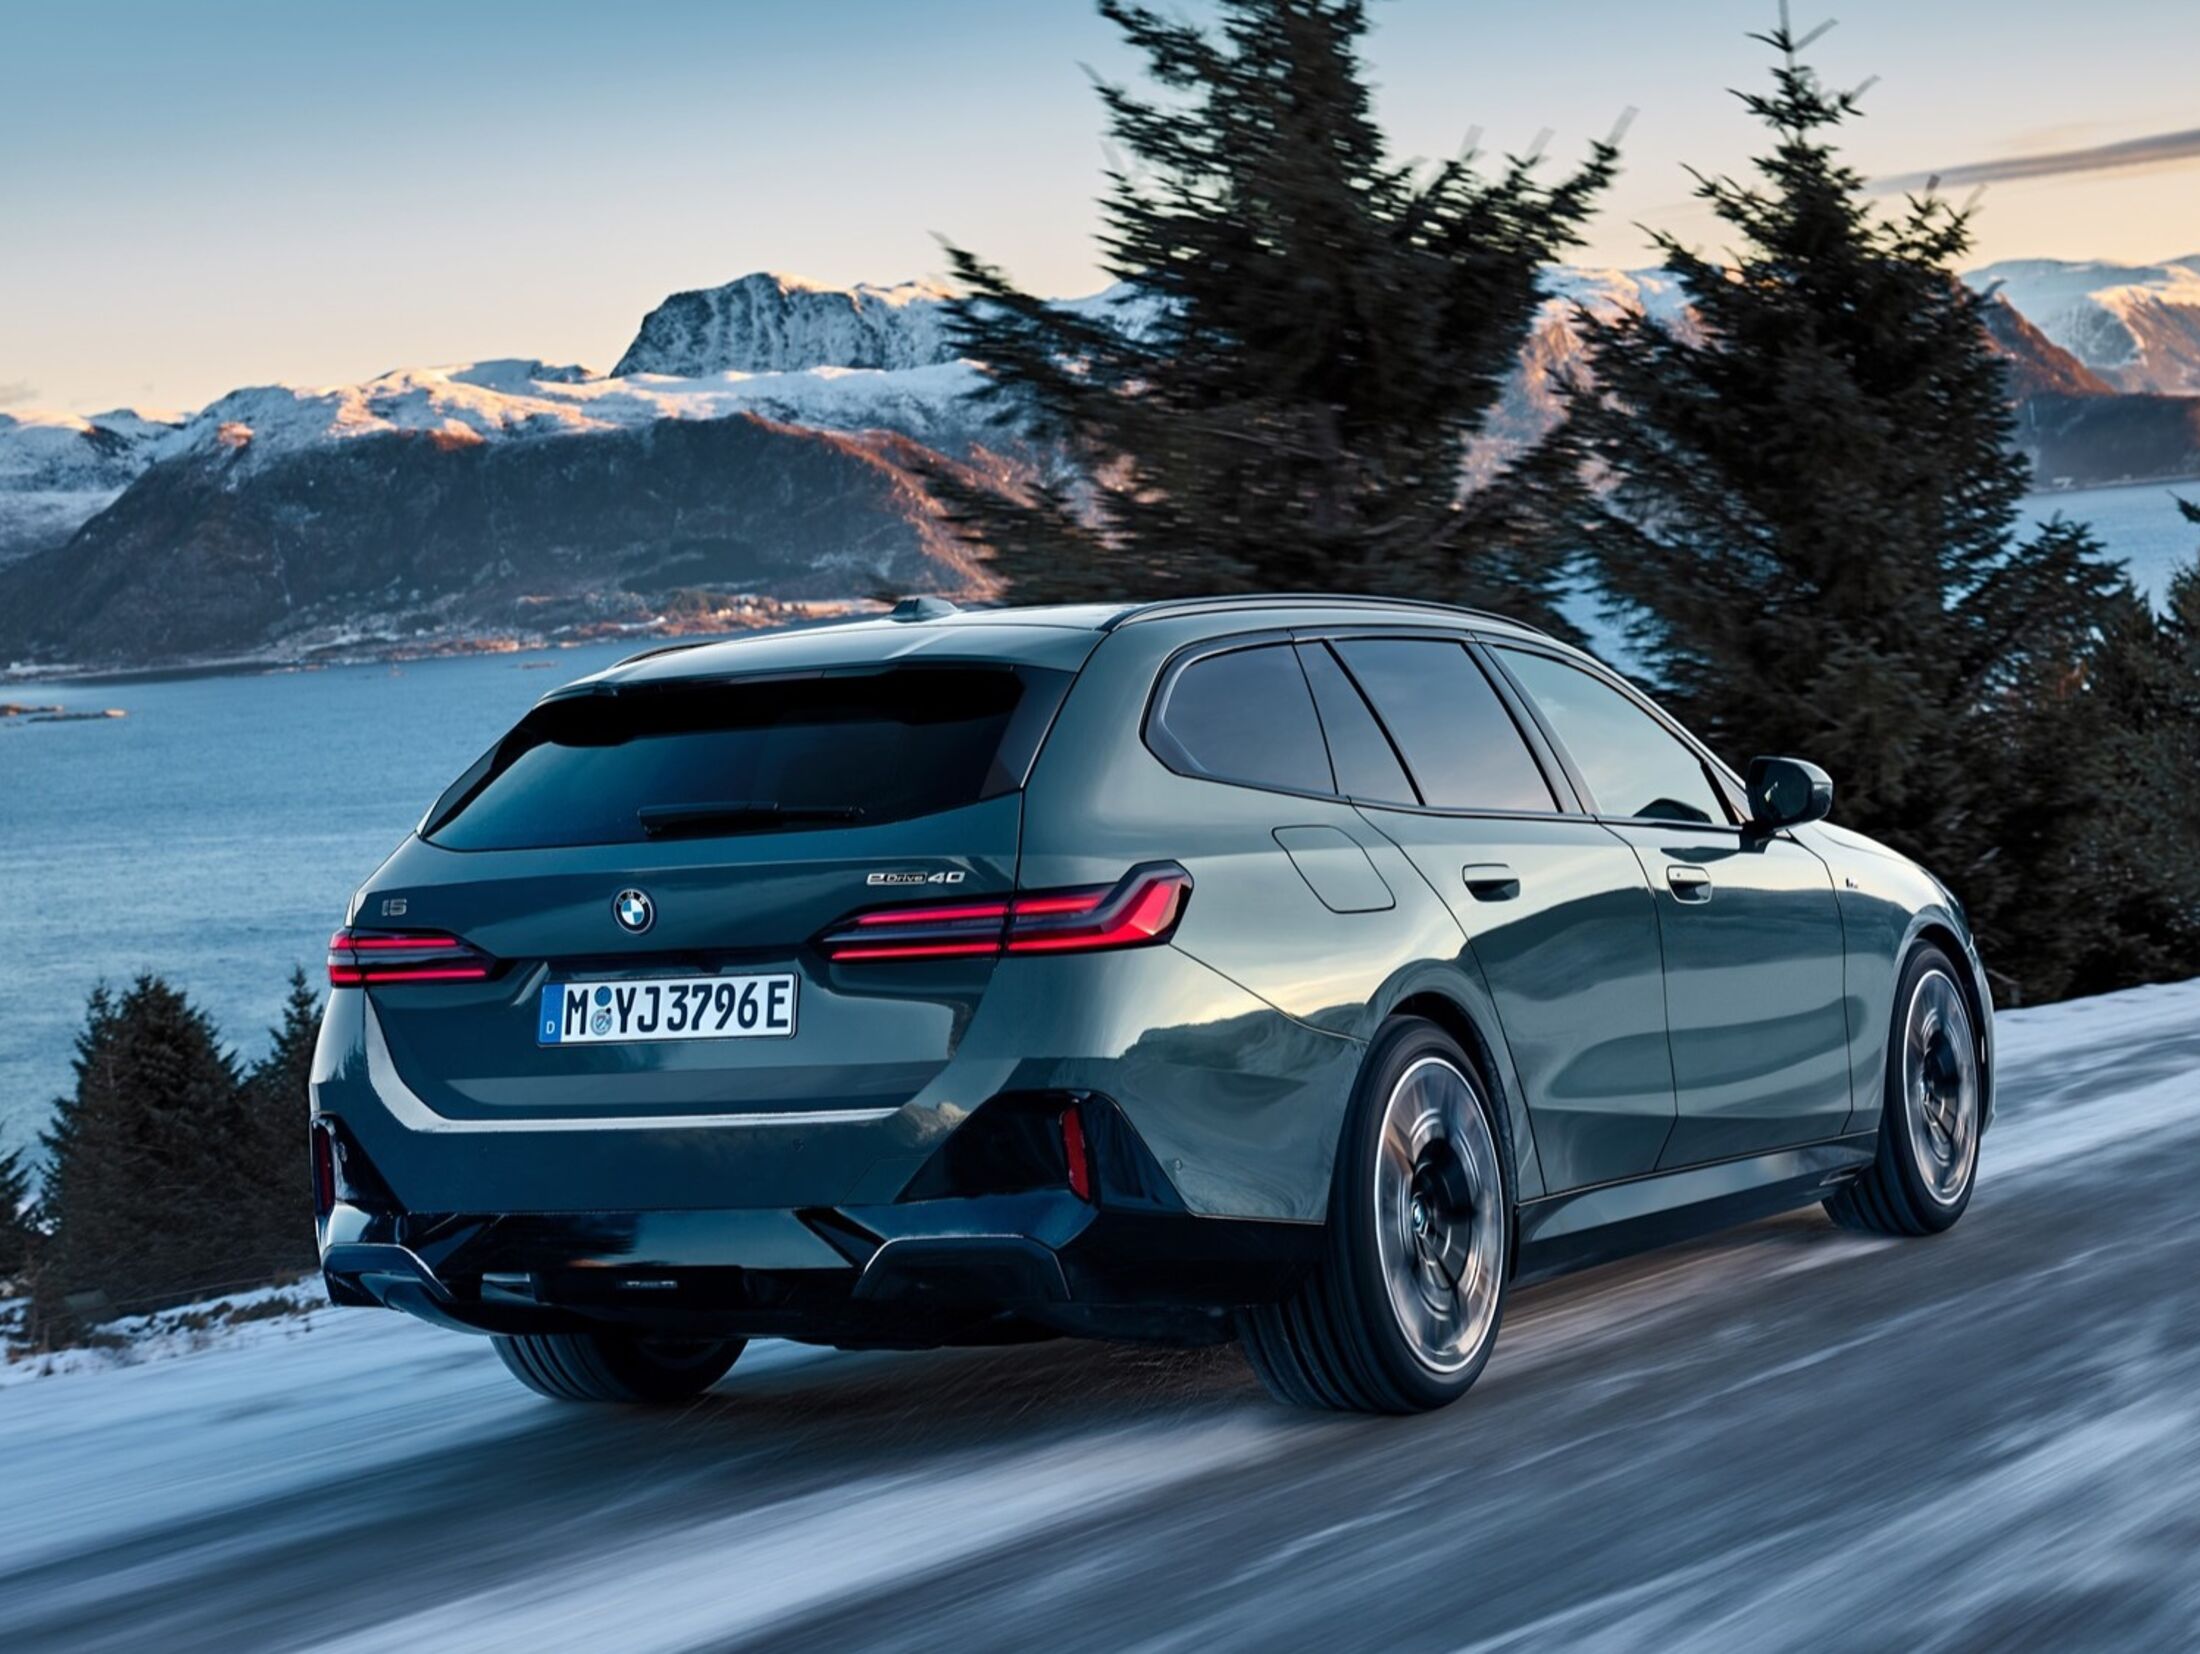 Der neue BMW 5er Touring (G31): Innenraum und Variabilität